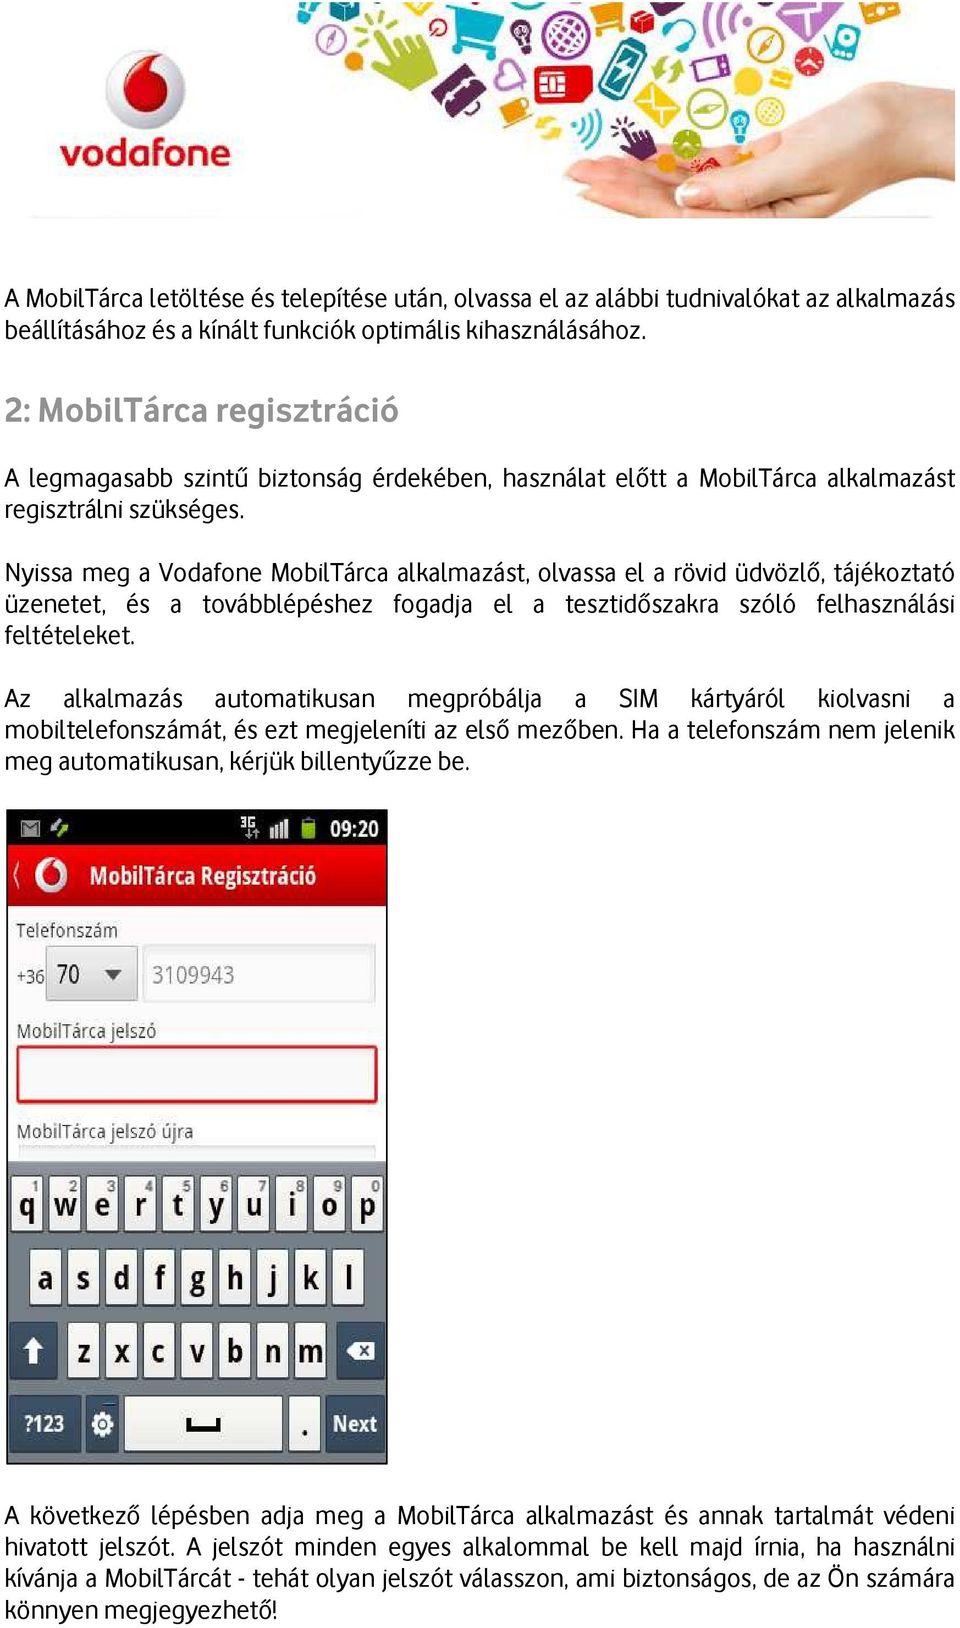 Nyissa meg a Vodafone MobilTárca alkalmazást, olvassa el a rövid üdvözlő, tájékoztató üzenetet, és a továbblépéshez fogadja el a tesztidőszakra szóló felhasználási feltételeket.